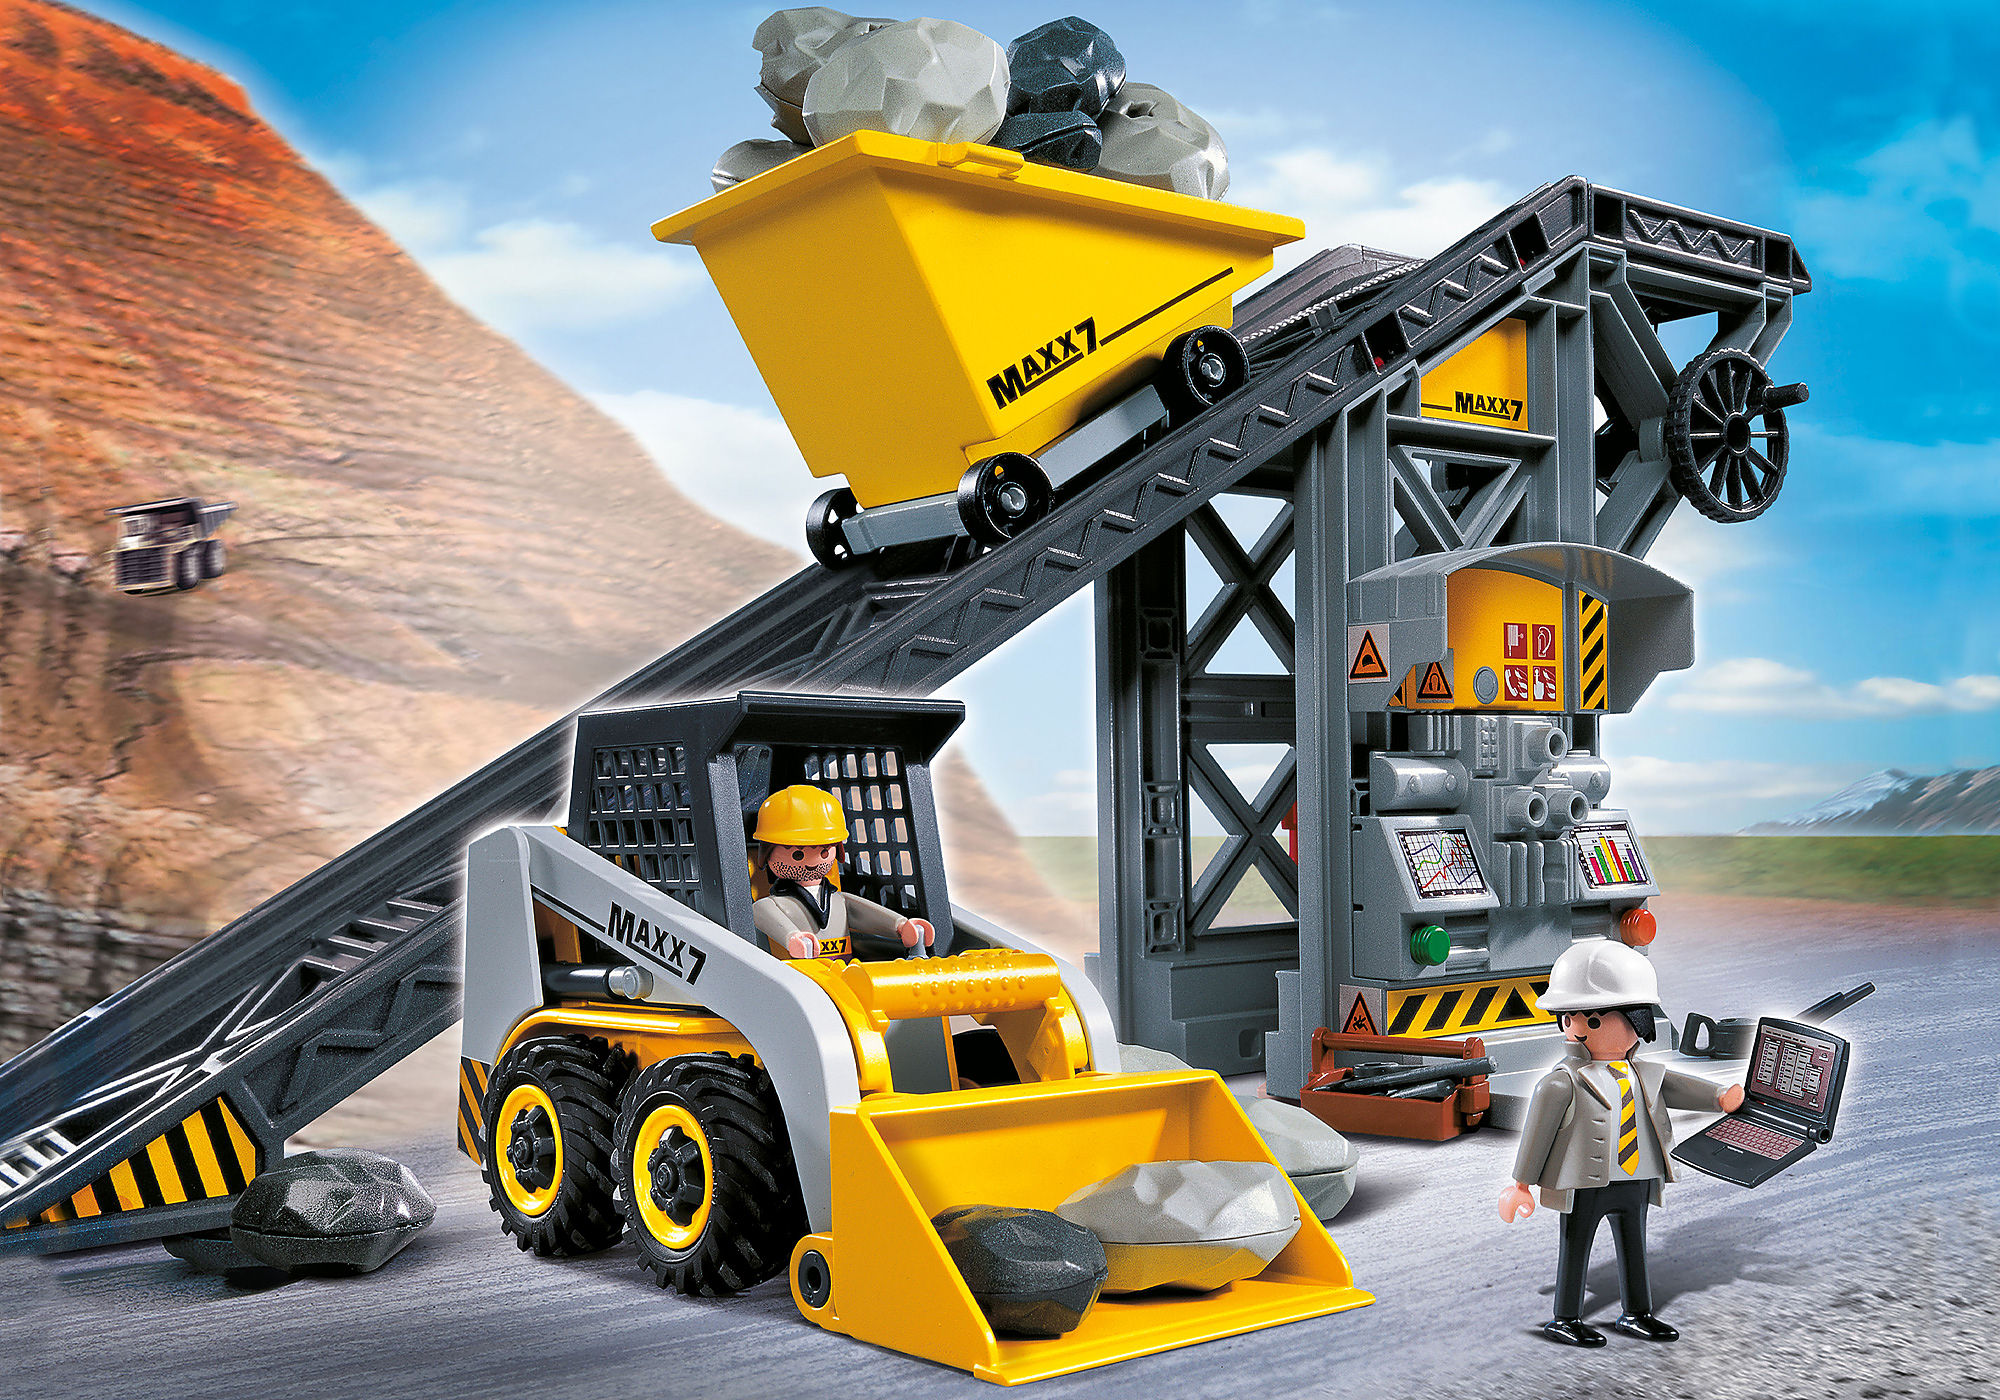 Conveyor Belt with Mini Excavator - 4041 | PLAYMOBIL®